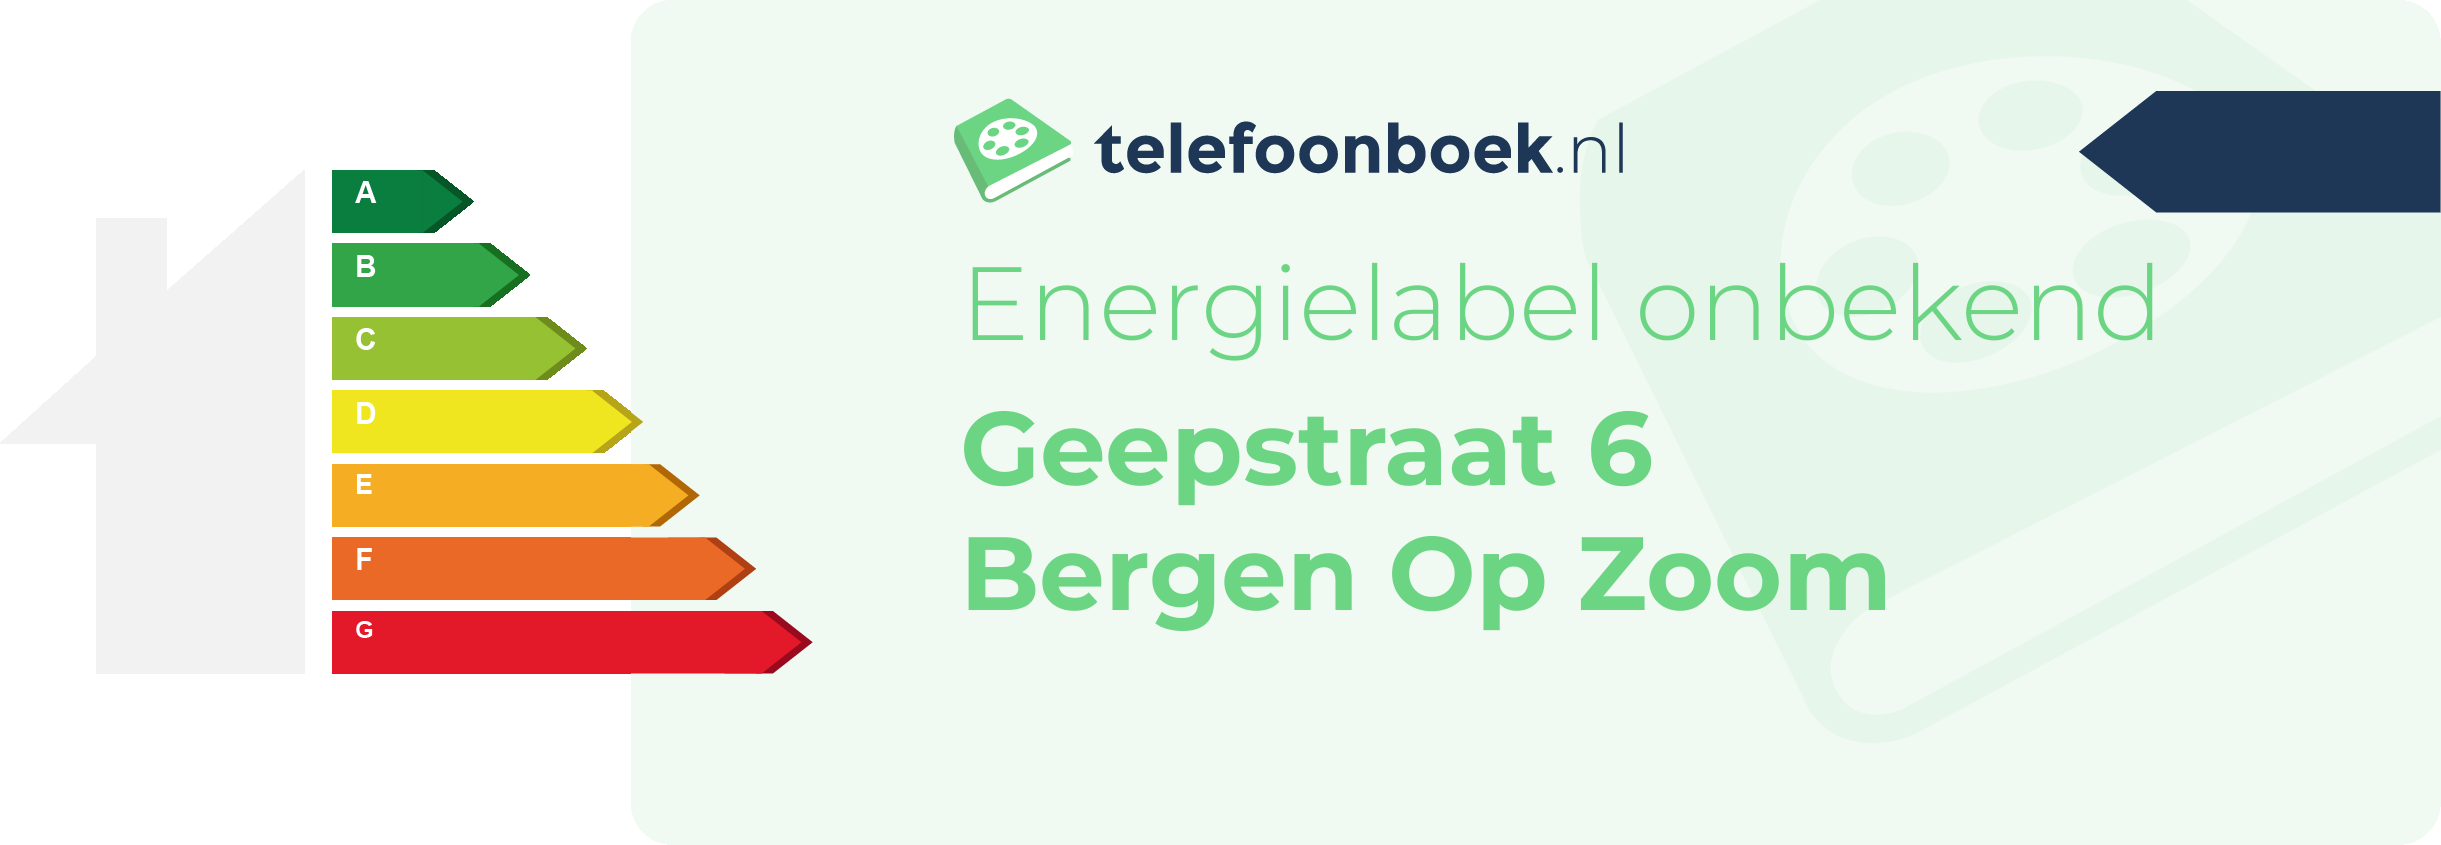 Energielabel Geepstraat 6 Bergen Op Zoom